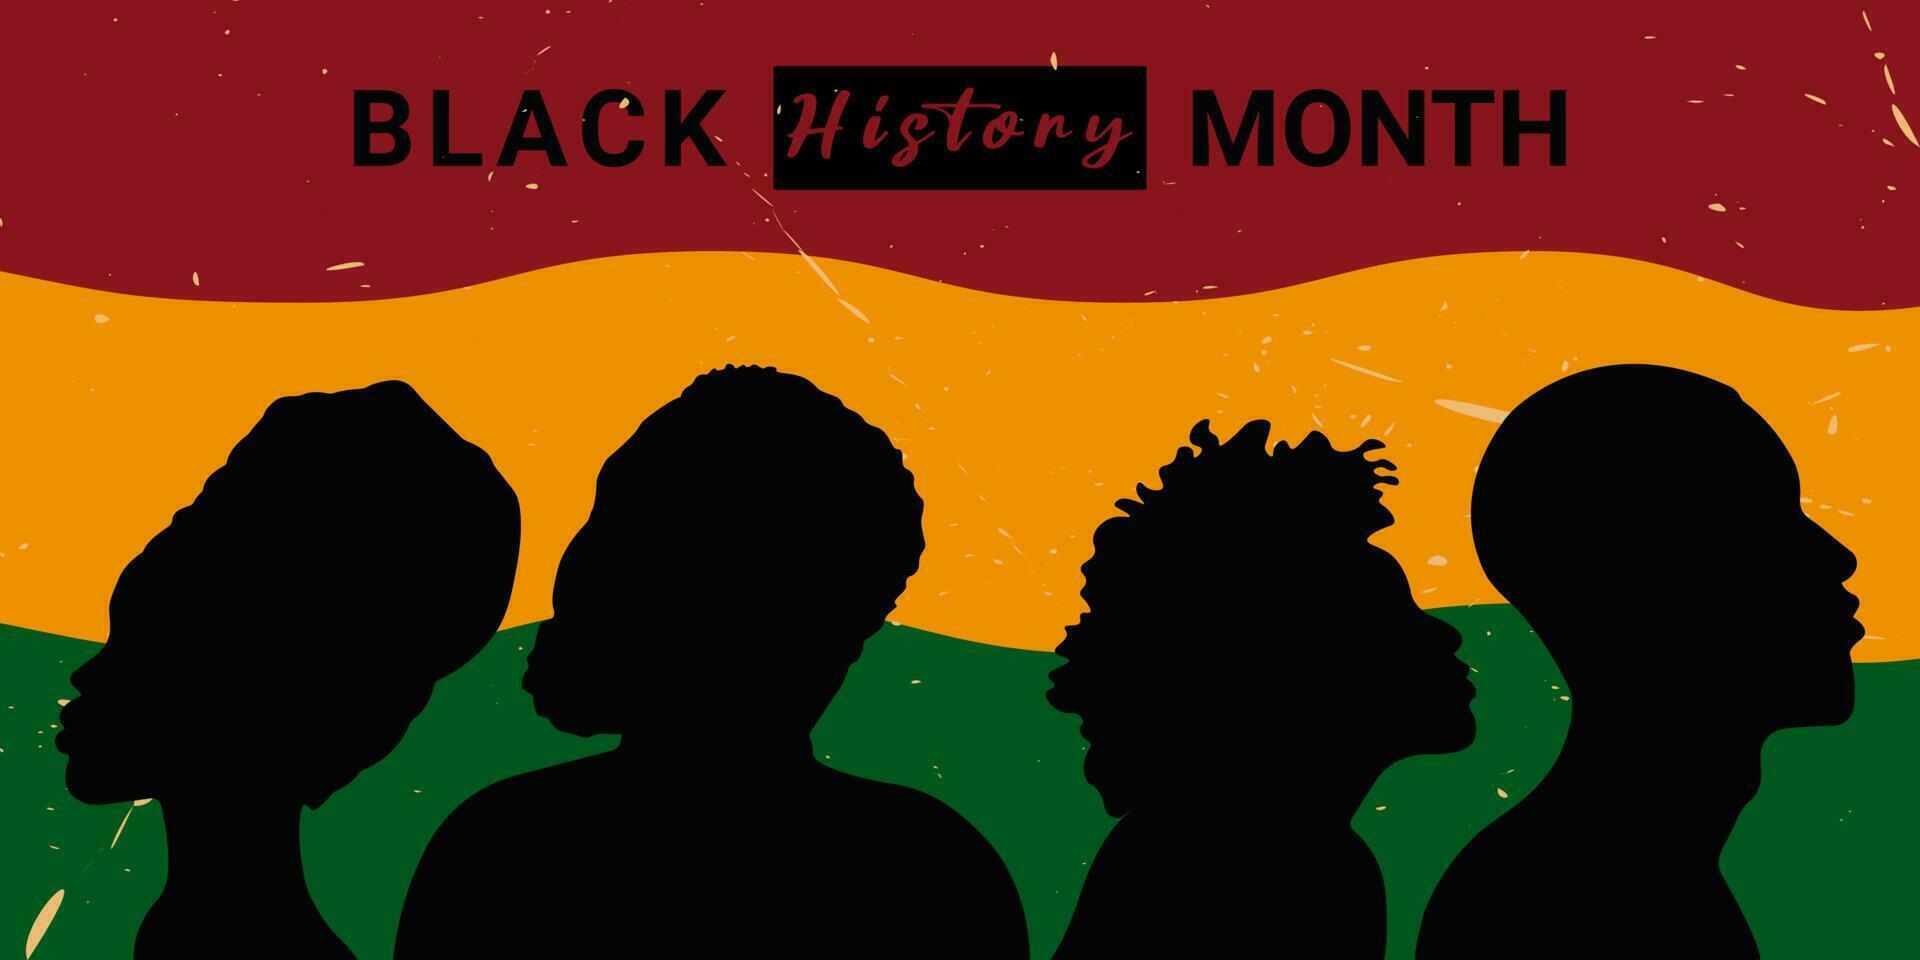 färgrik minimal vektor illustration med silhuett kvinnor och män i retro stil.firande av svart historia månad oktober och februari, afrikansk amerikan människor.